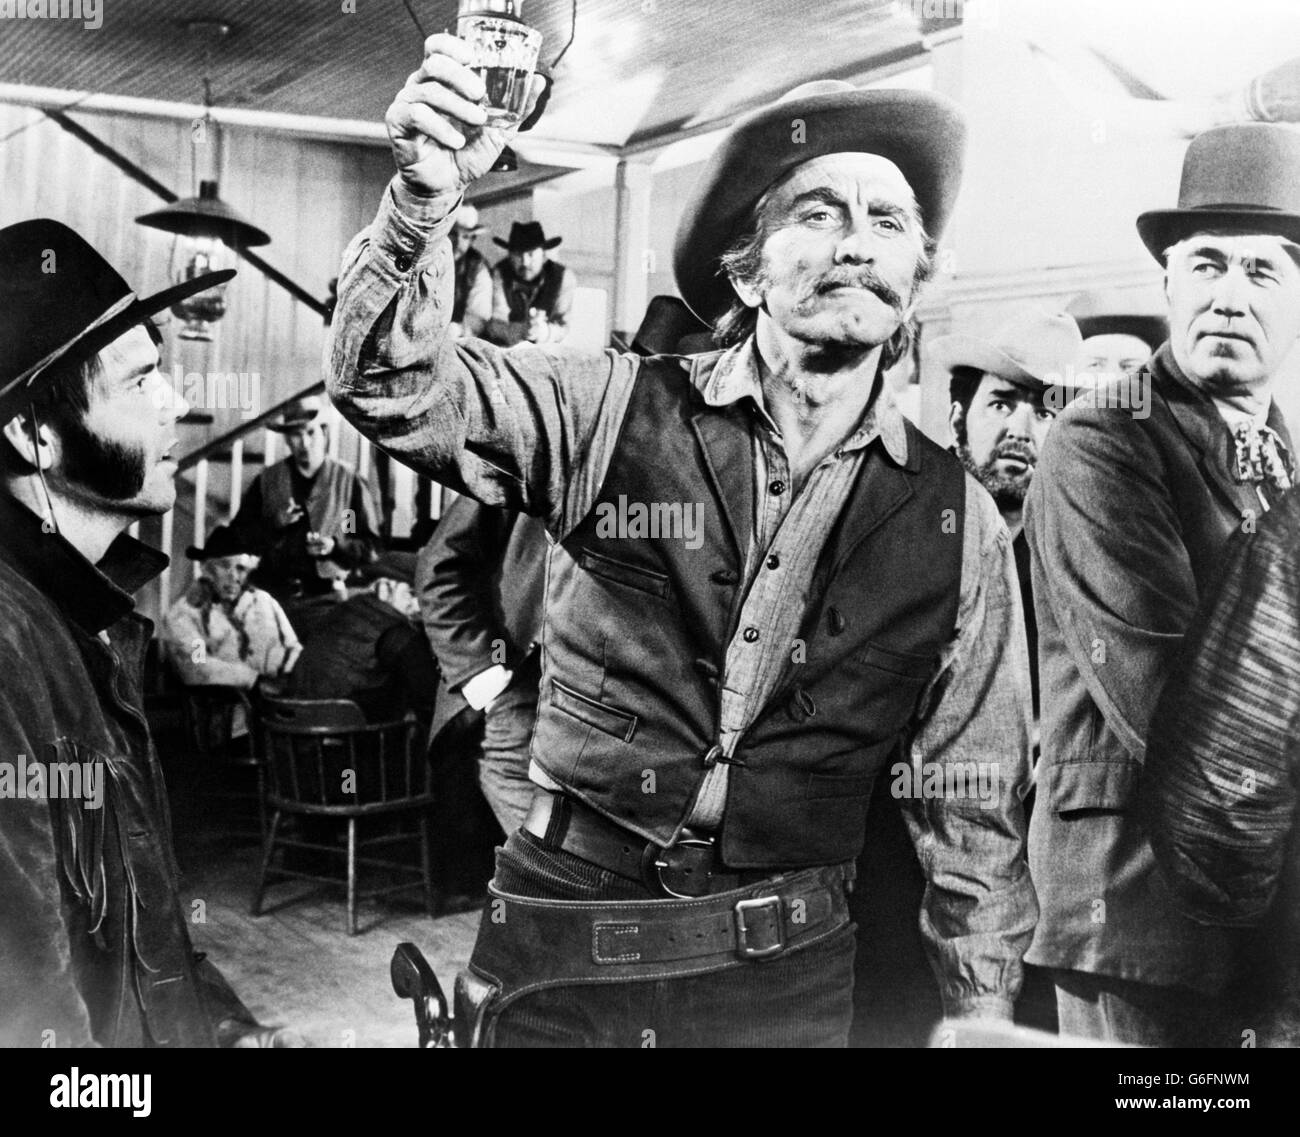 Film - Una pelea de armas - Kirk Douglas. Kirk Douglas en una escena de la película A Gunfight, en la que participa en un duelo en un pueblo mexicano. Foto de stock